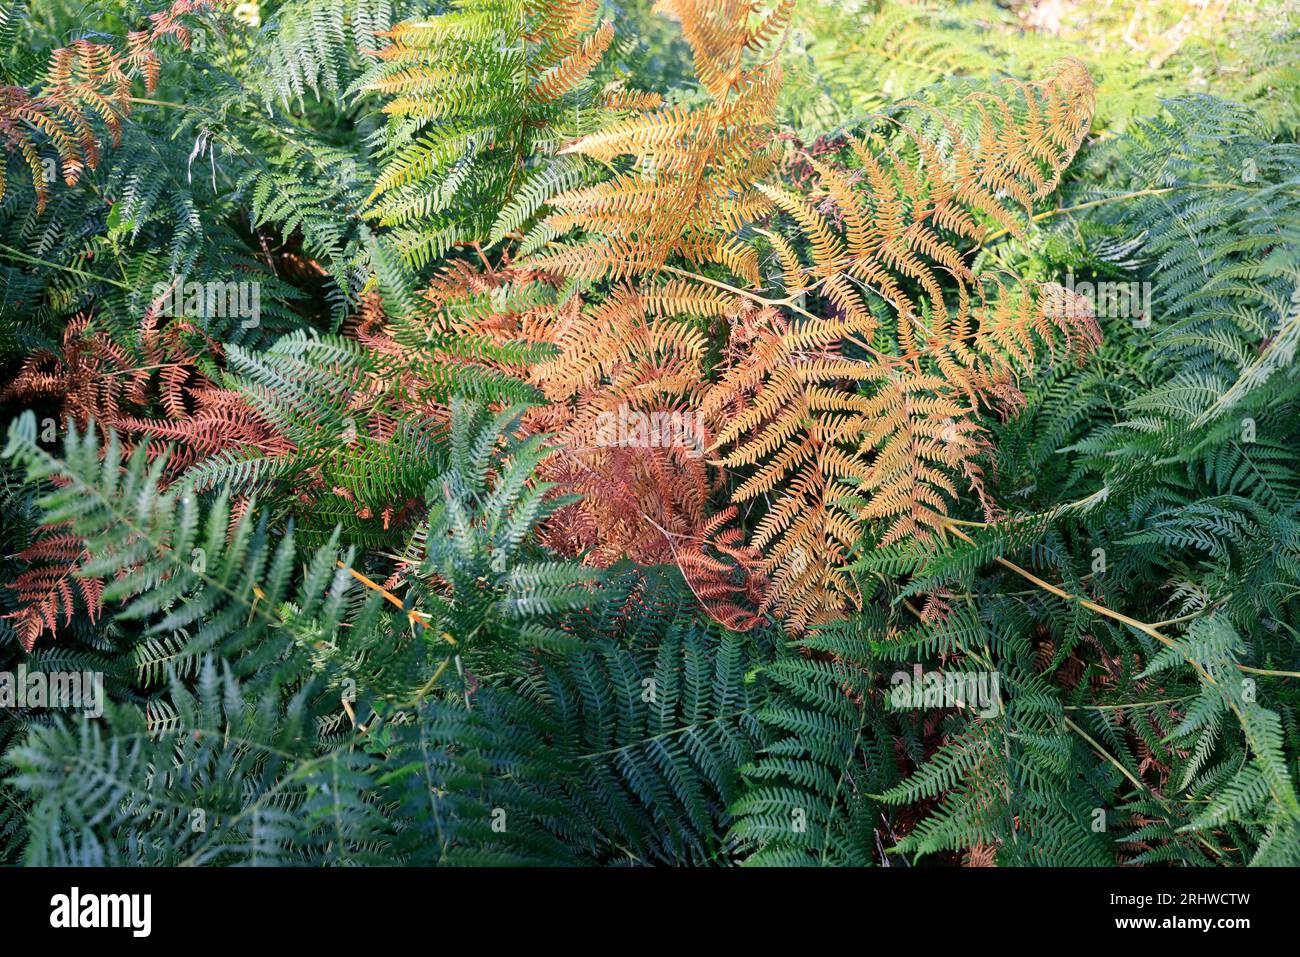 Végétation dans la nature. Fougères ou Filicophytes (Filicophyta) dans la campagne en Corrèze. Limousin, Nouvelle Aquitaine, France, Europe Stock Photo